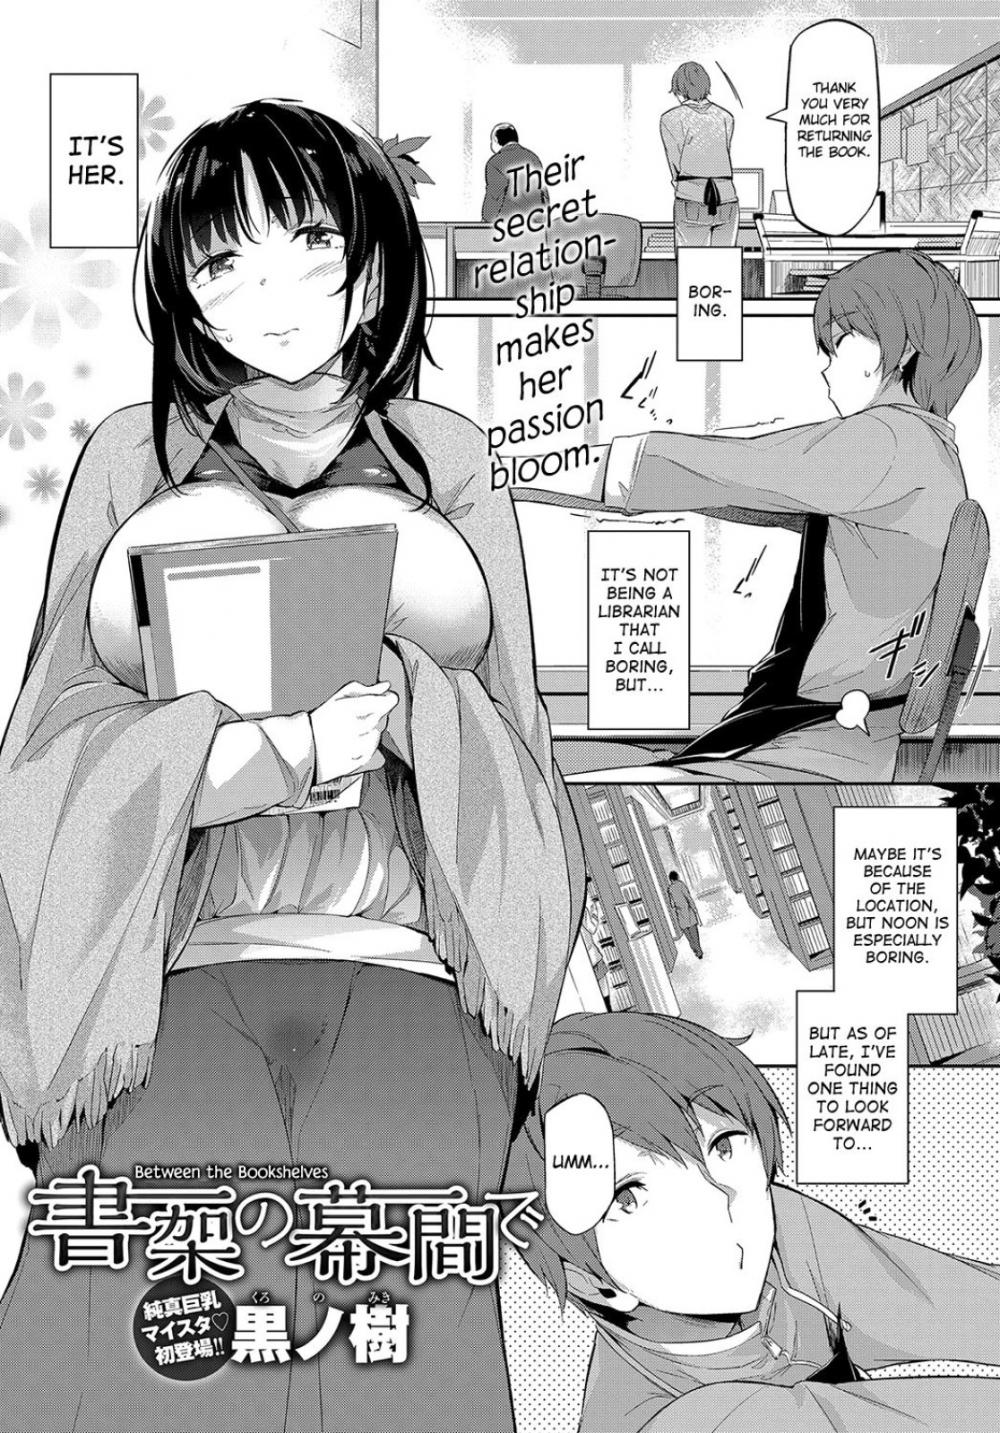 Hentai Manga Comic-Between the Bookshelves-Read-1